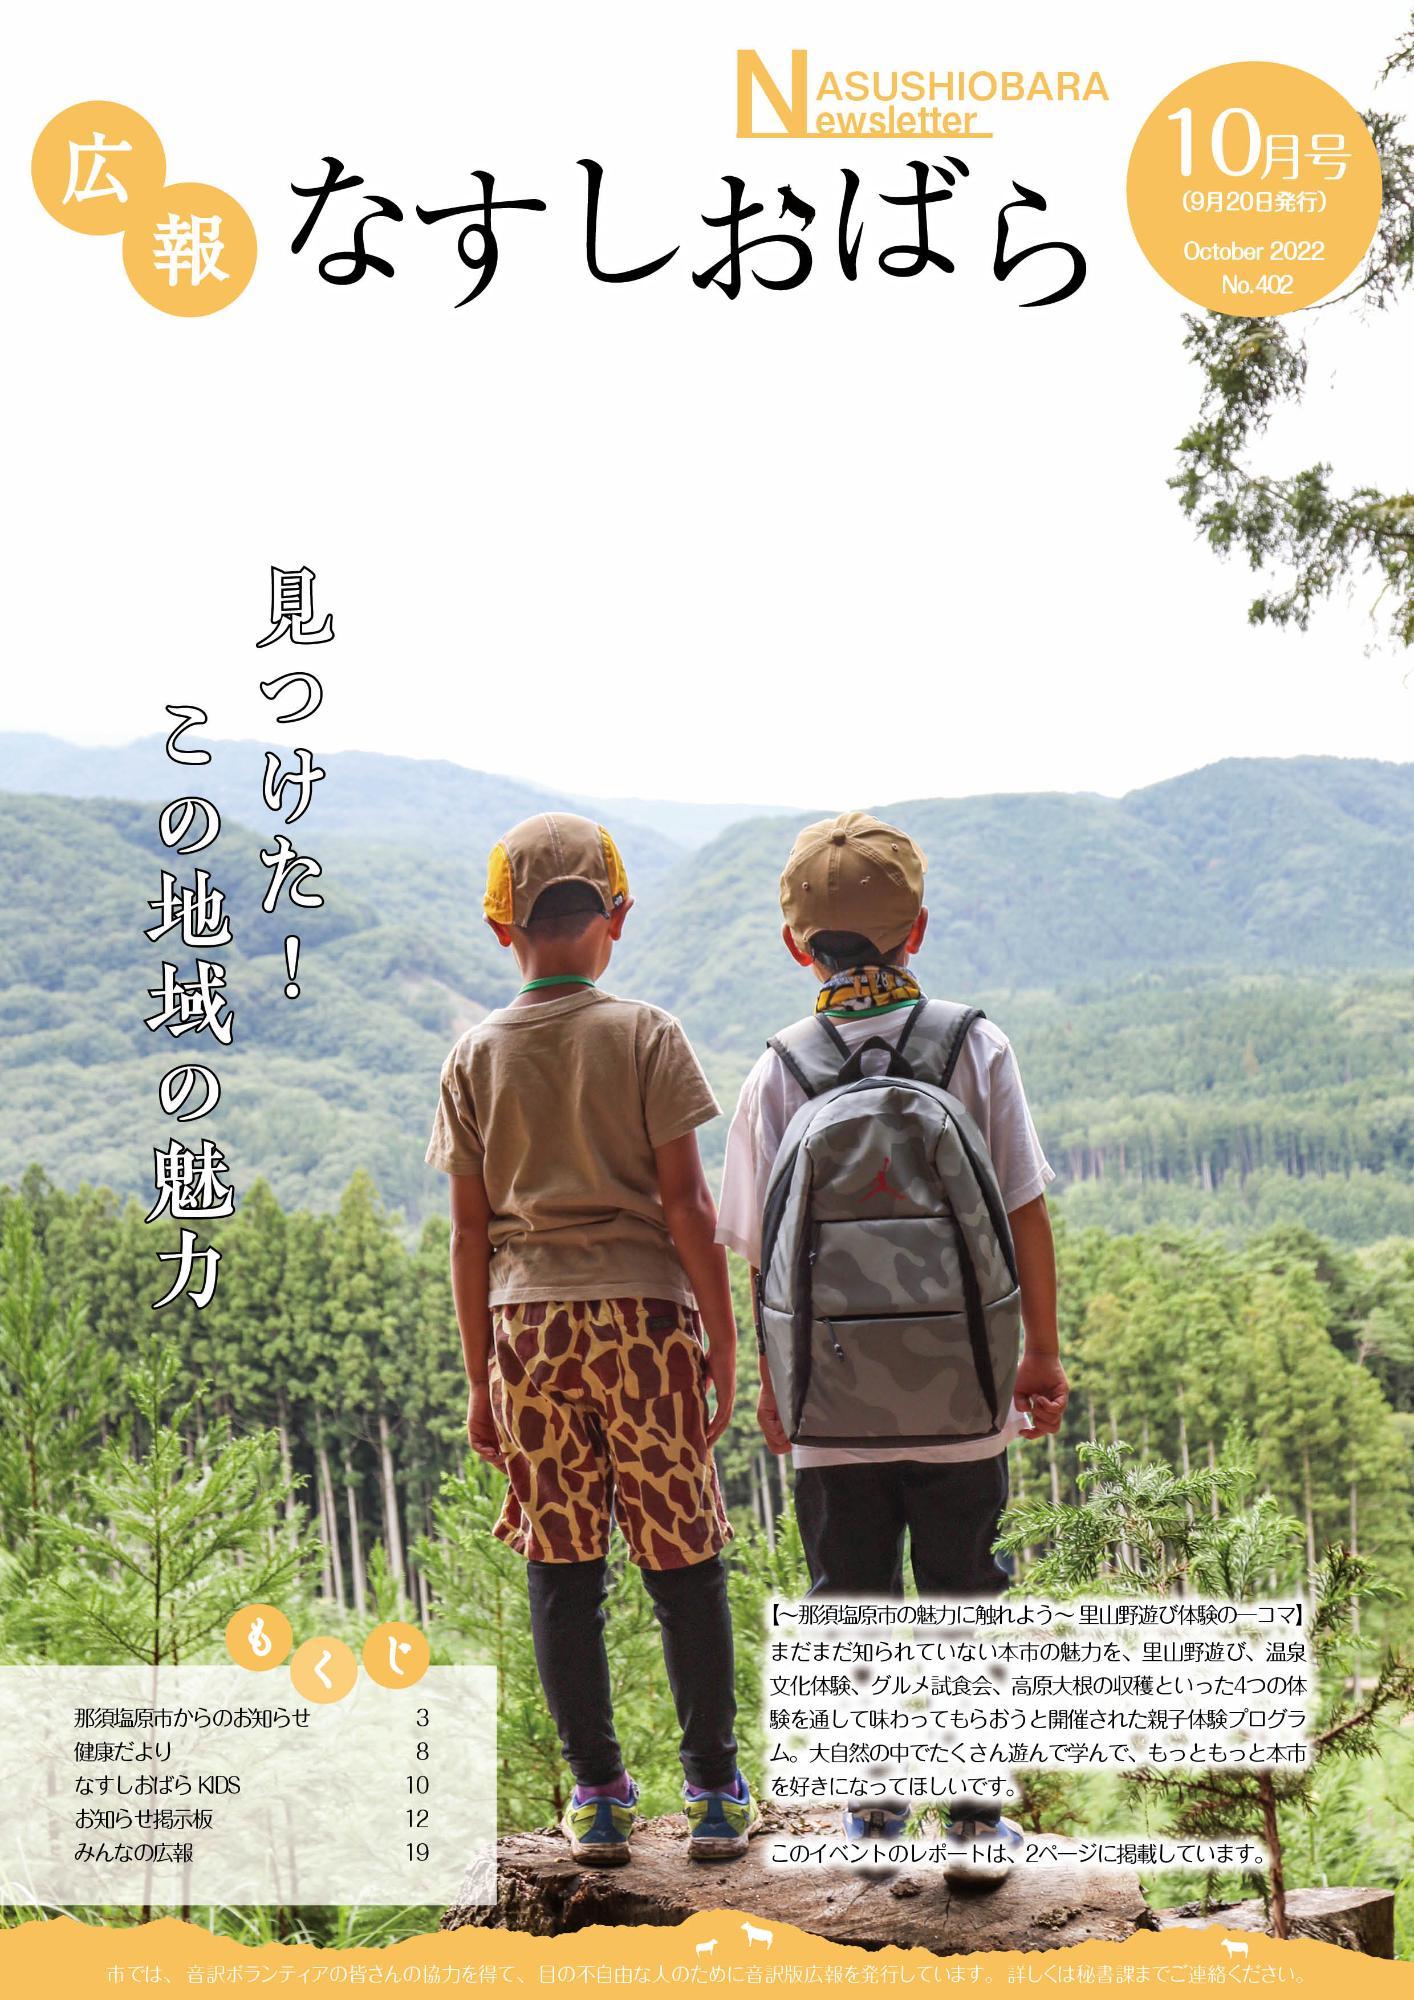 広報なすしおばら10月号表紙「広大な山林を見つめる二人の小学生」